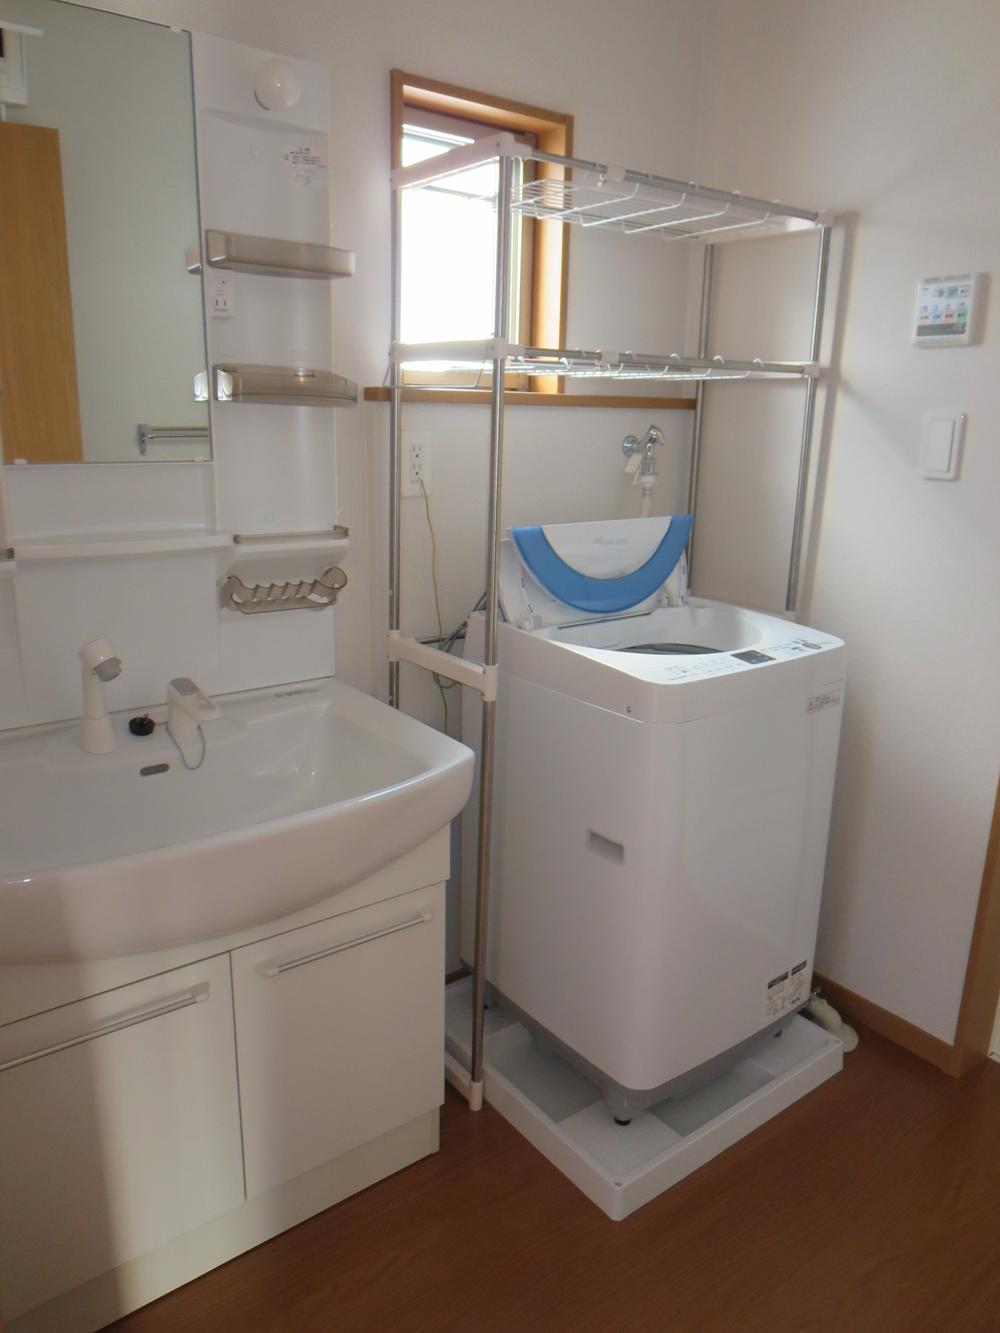 Wash basin, toilet. With washing machine